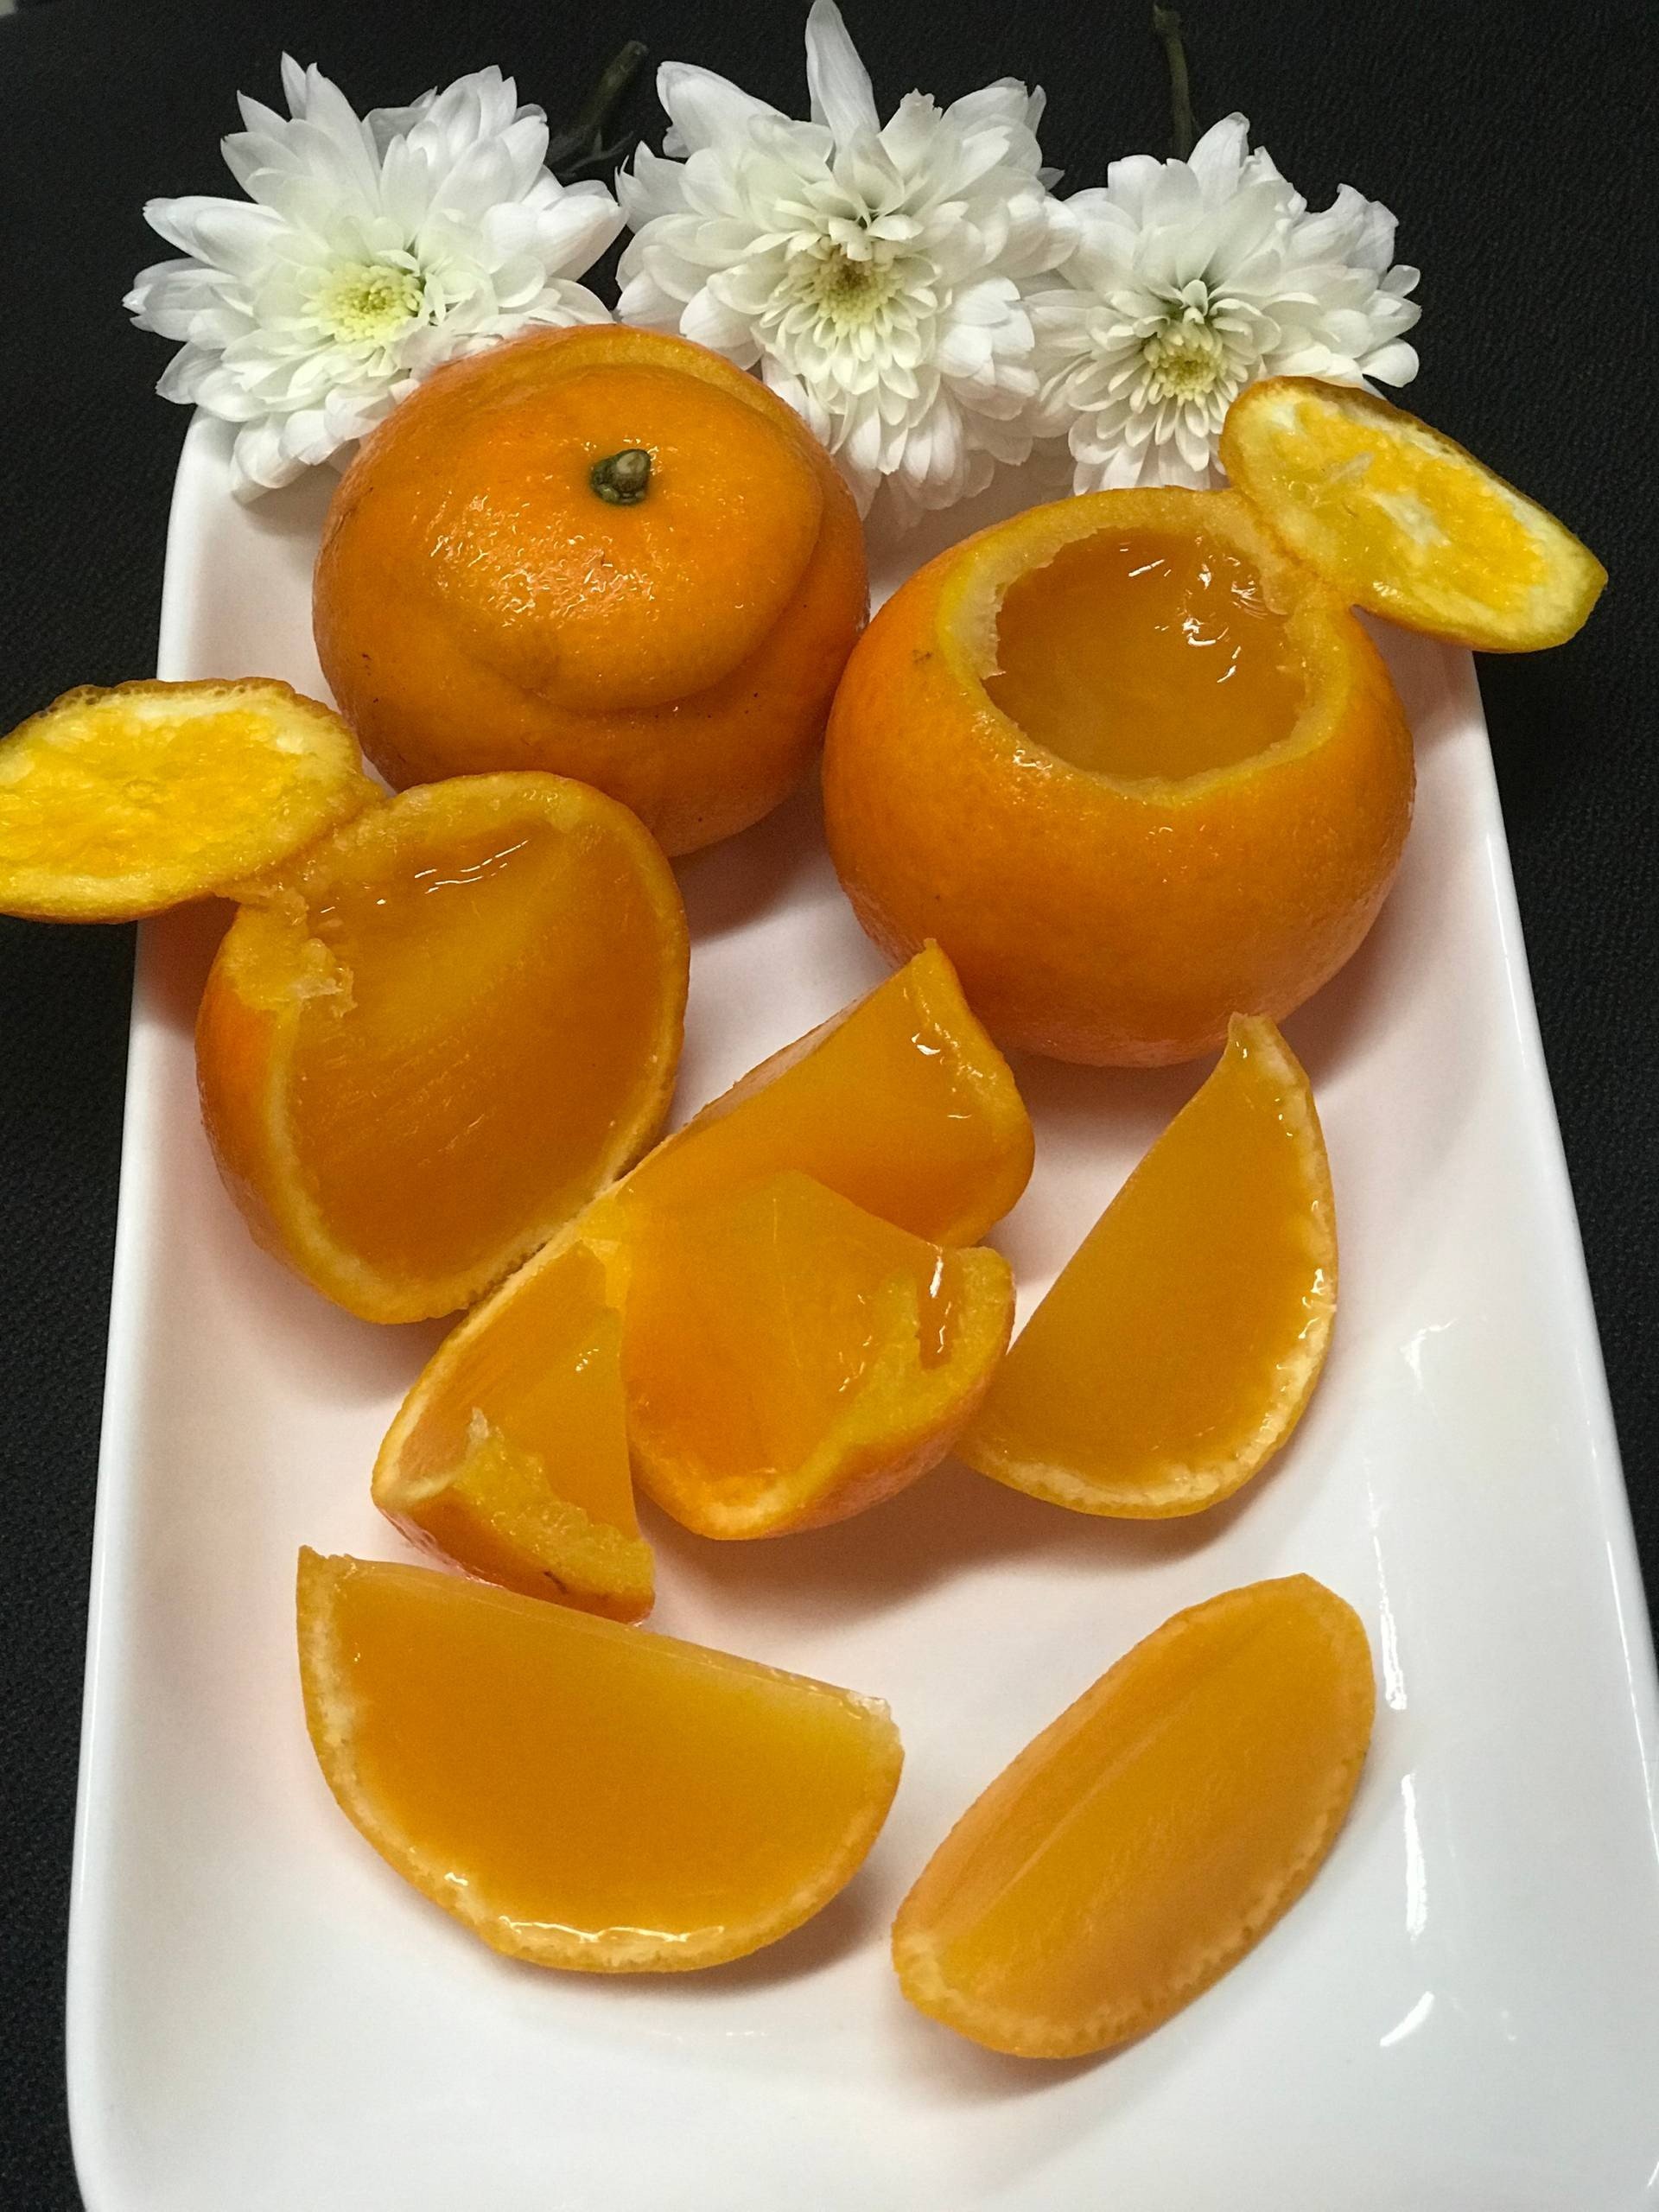 วุ้นน้ำส้มสดในลูกส้ม 🍊🍊 เมนูอาหารว่าง